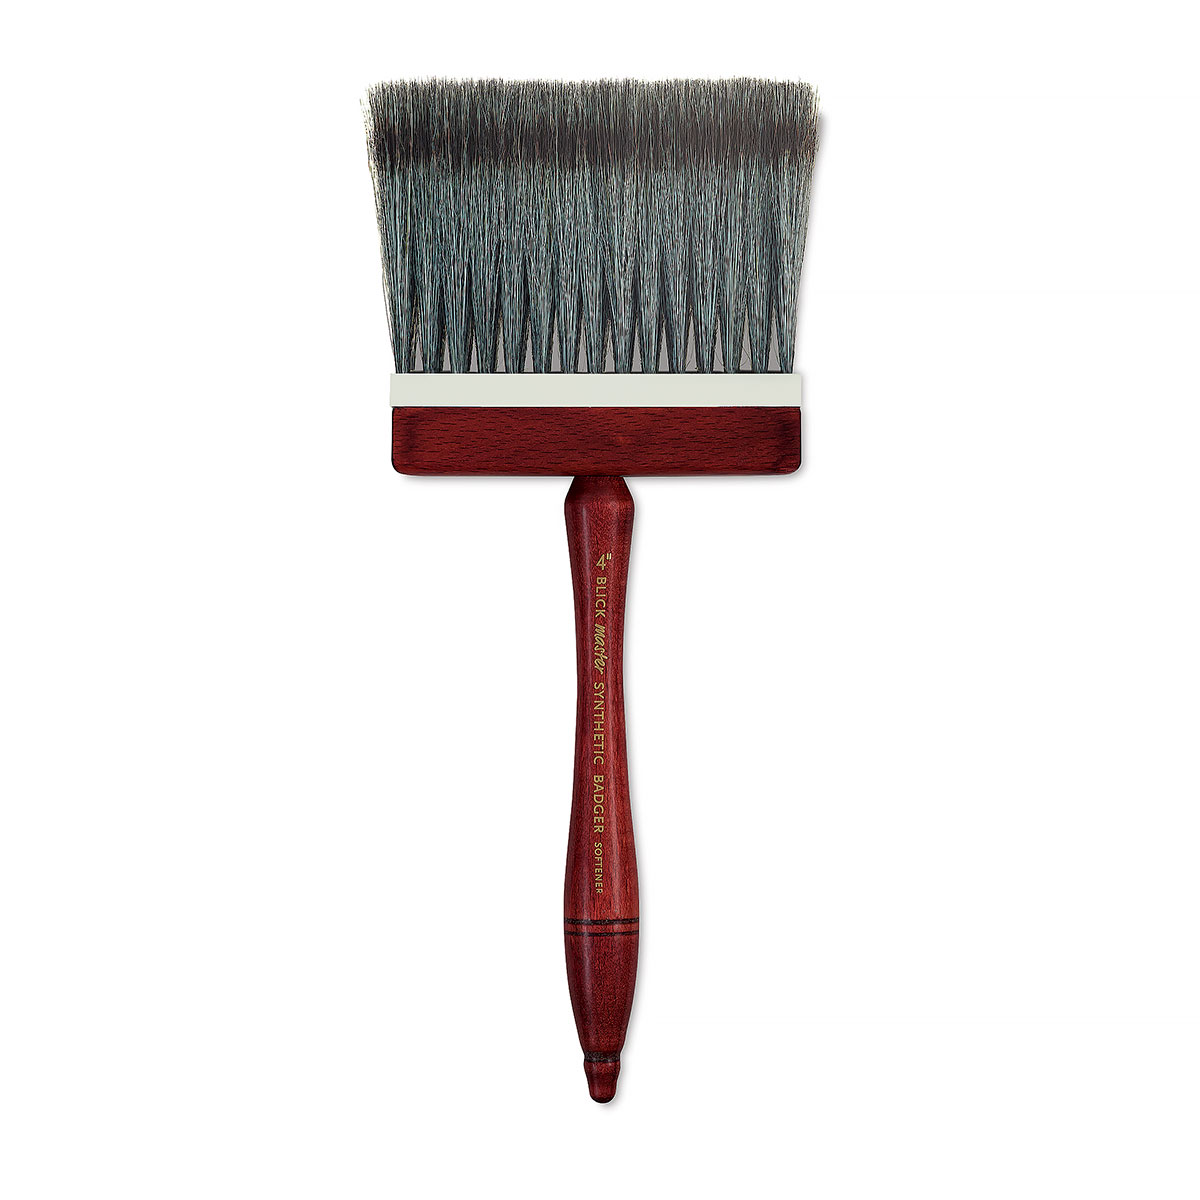 Badger Blender Brush #4 - M.Grumbacher Lighty Used Heritage brush, no  longer manufactured. Excellent for blending oils. $25.00 (retail 49.99)